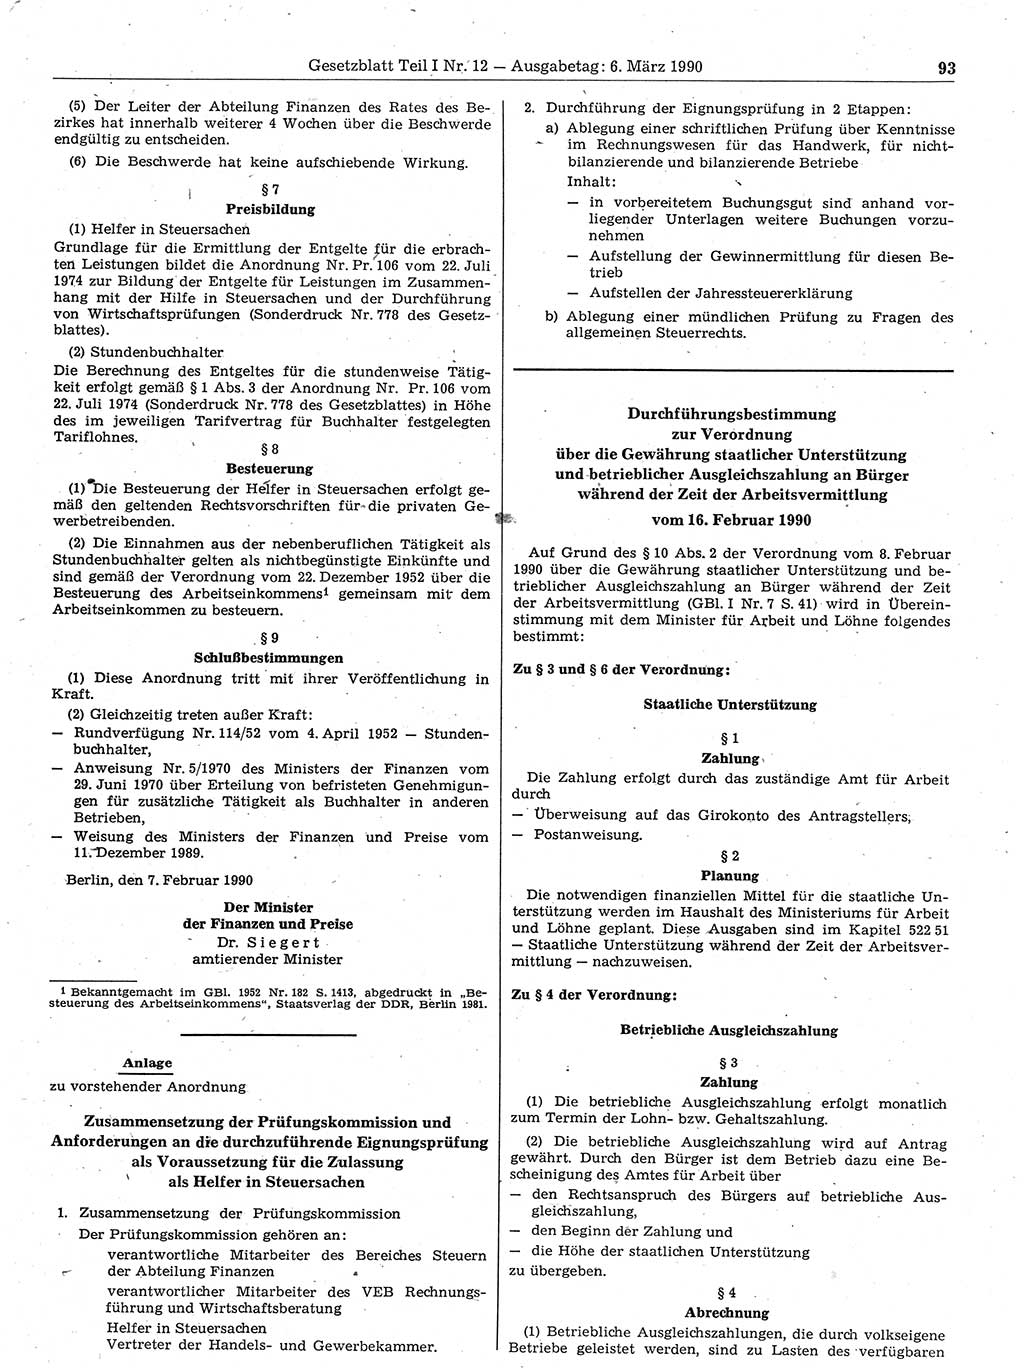 Gesetzblatt (GBl.) der Deutschen Demokratischen Republik (DDR) Teil Ⅰ 1990, Seite 93 (GBl. DDR Ⅰ 1990, S. 93)